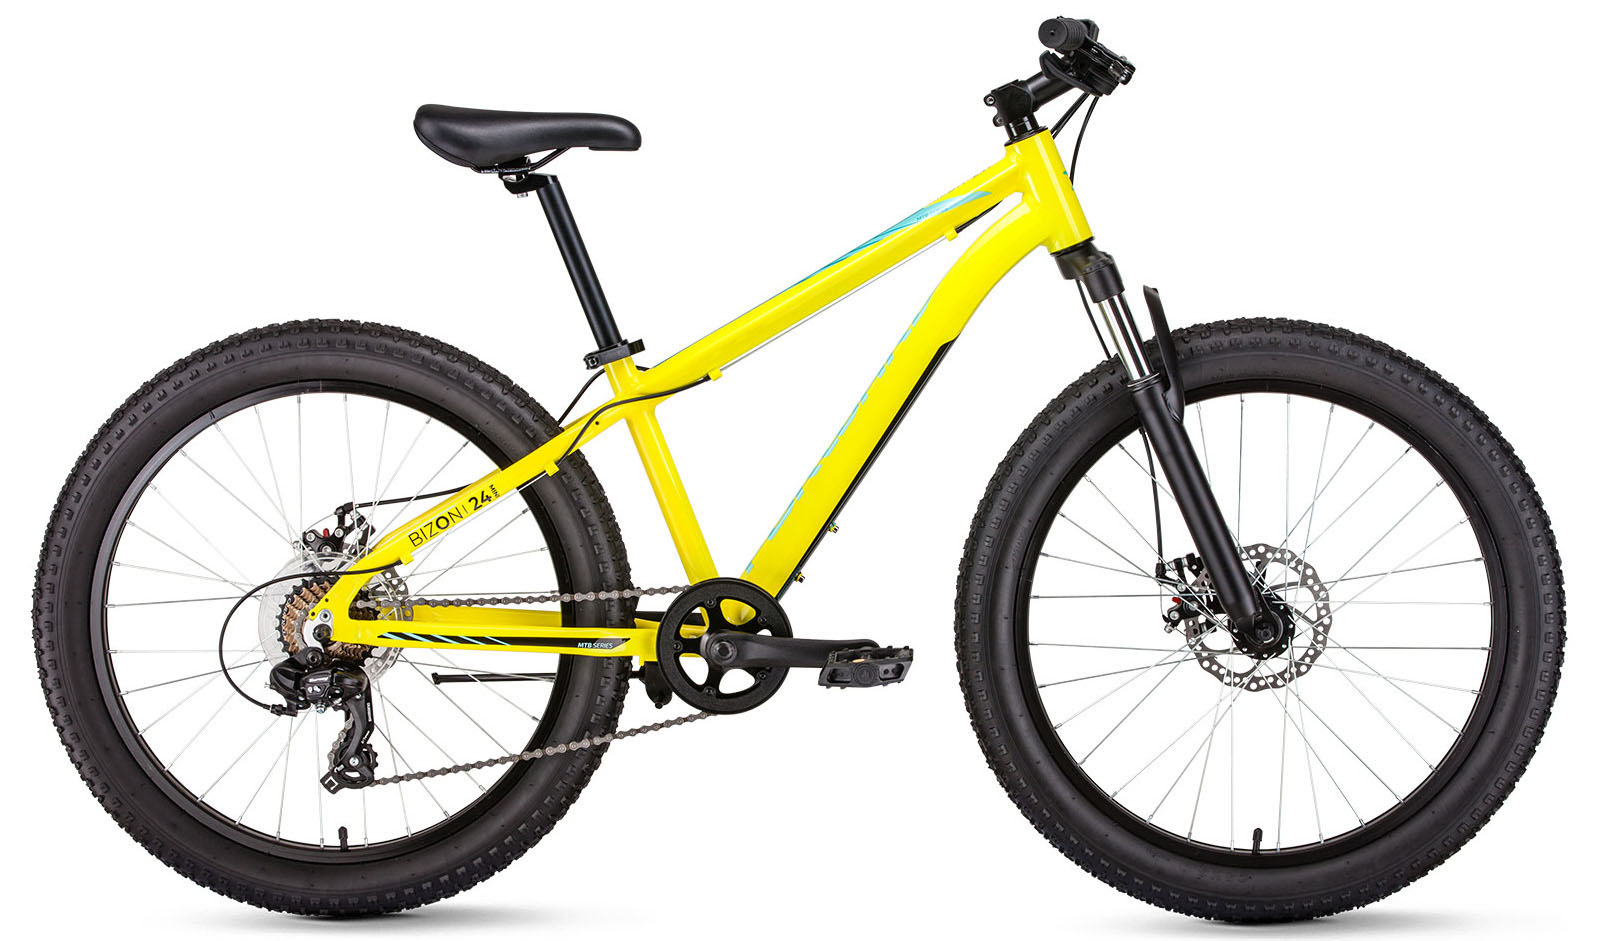  Отзывы о Детском велосипеде Forward Bizon Mini 24 2019